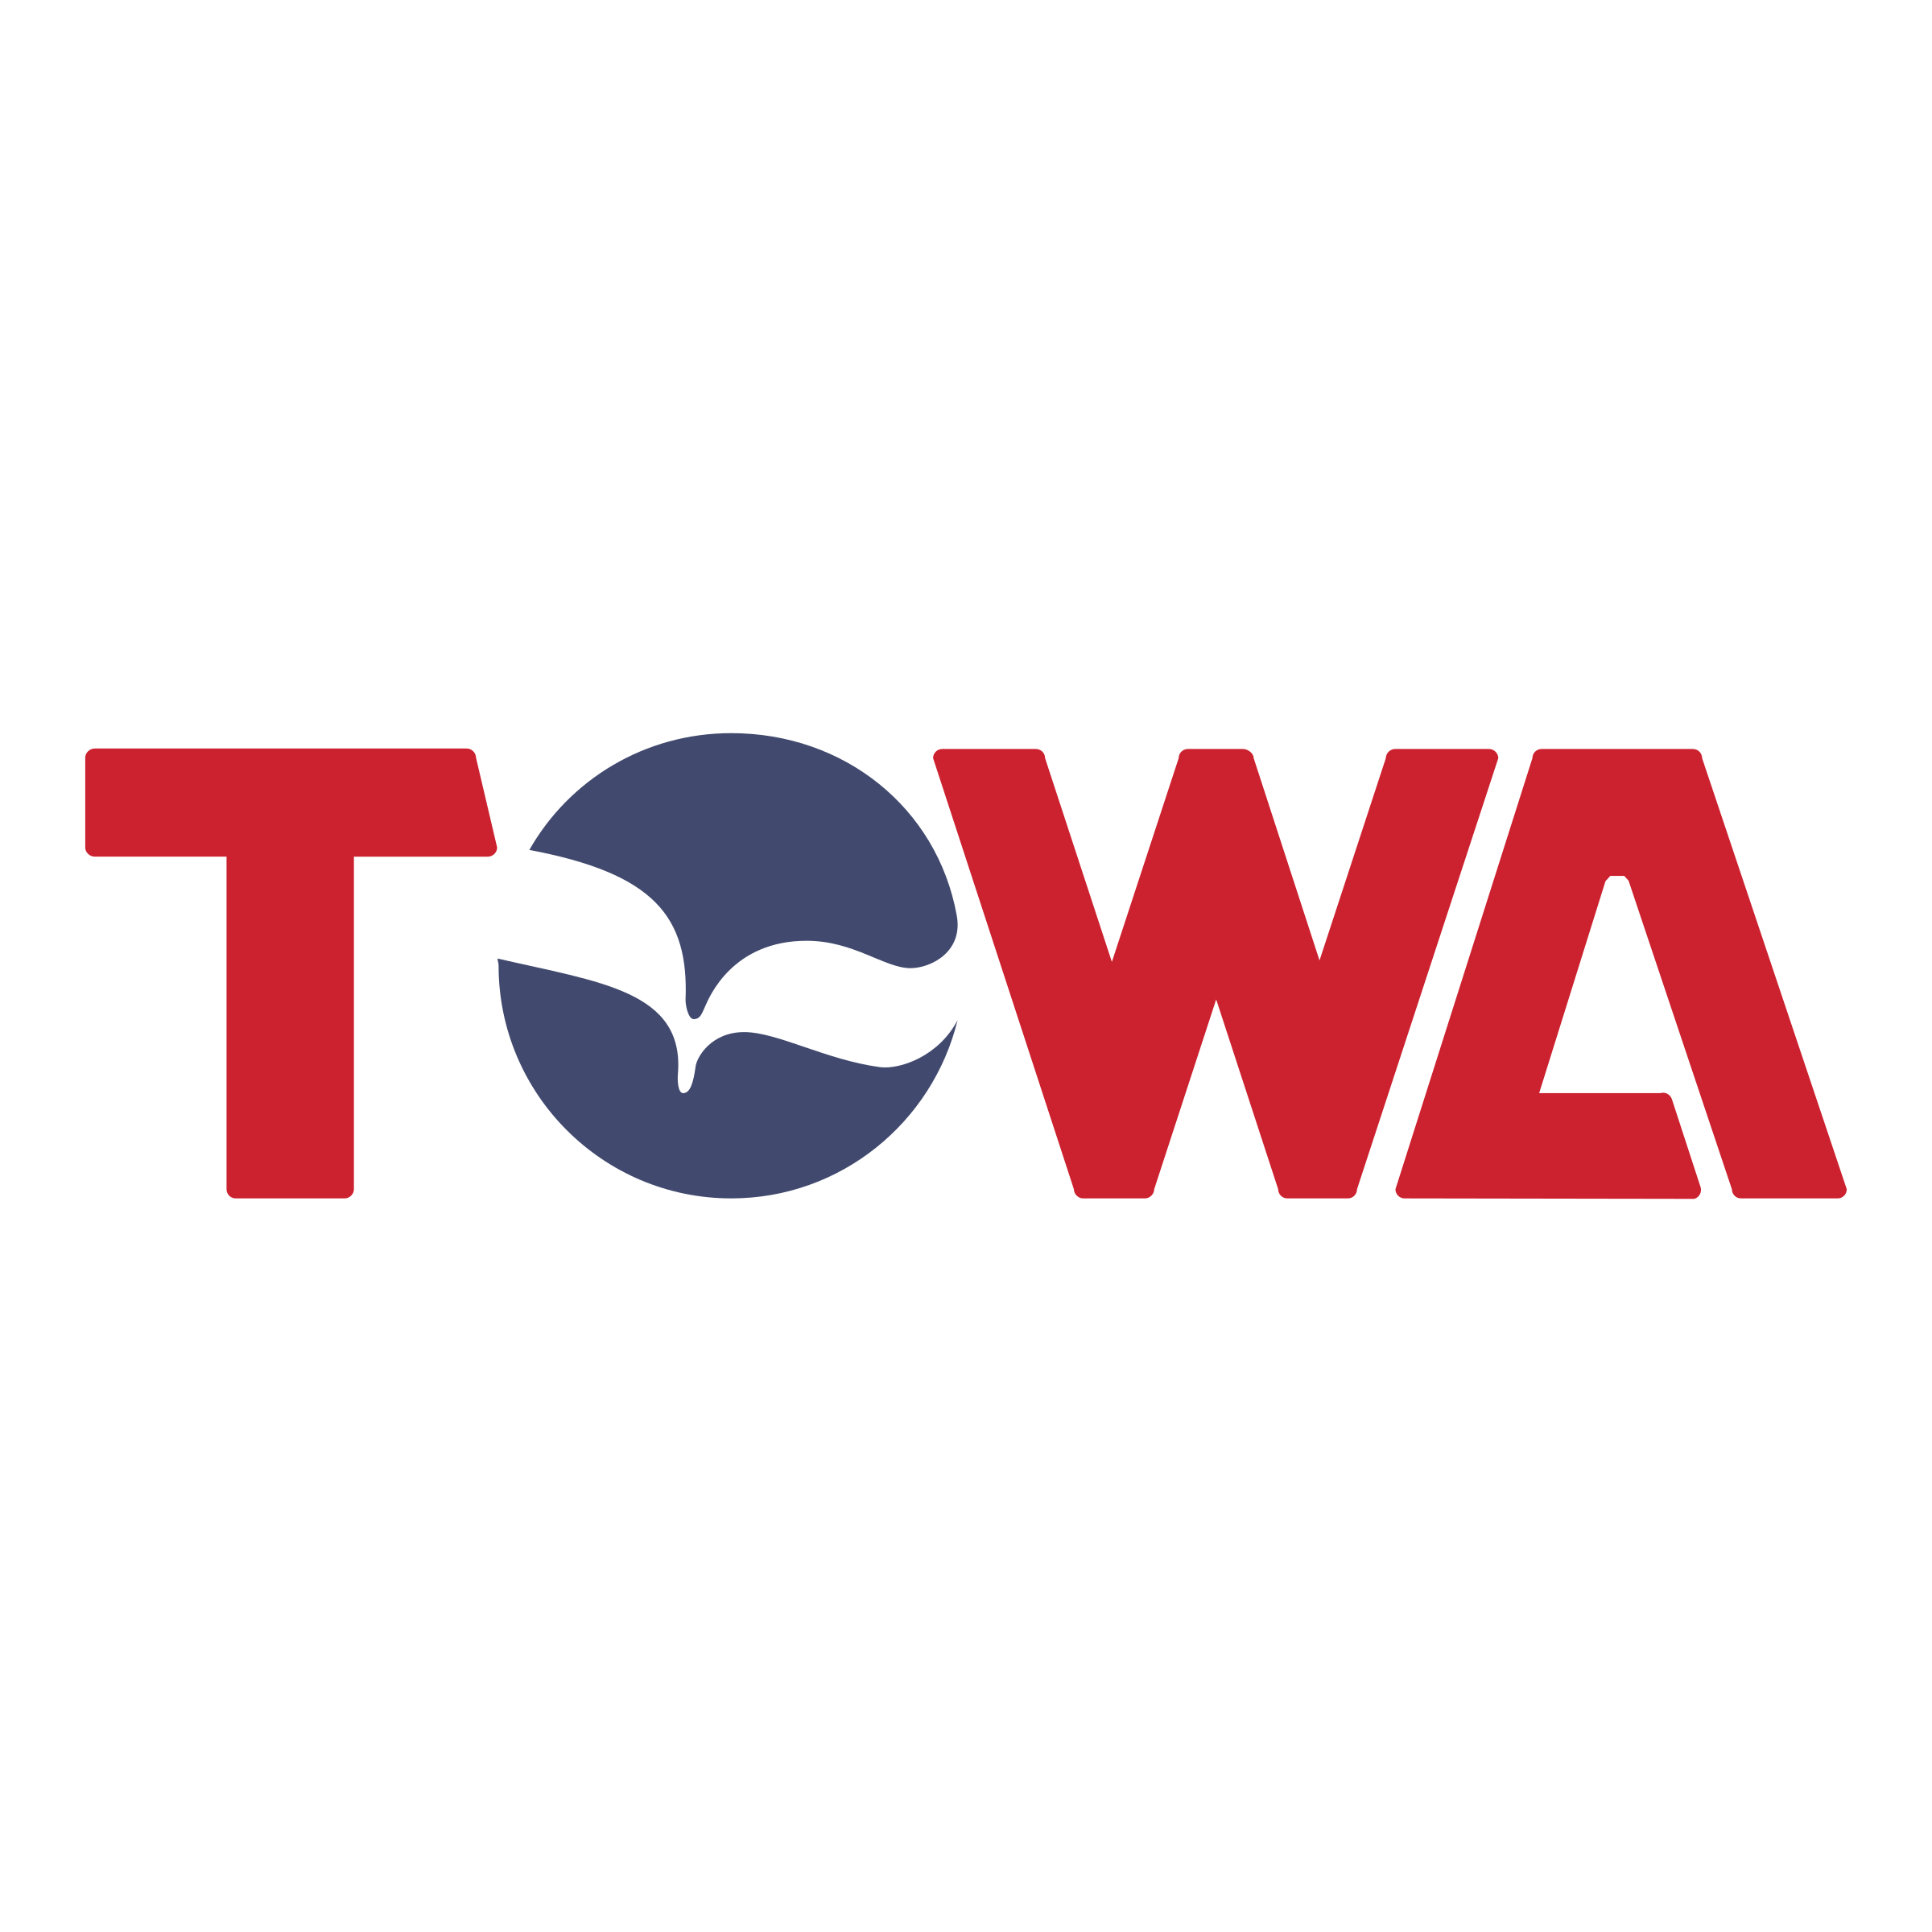 Towa Logo